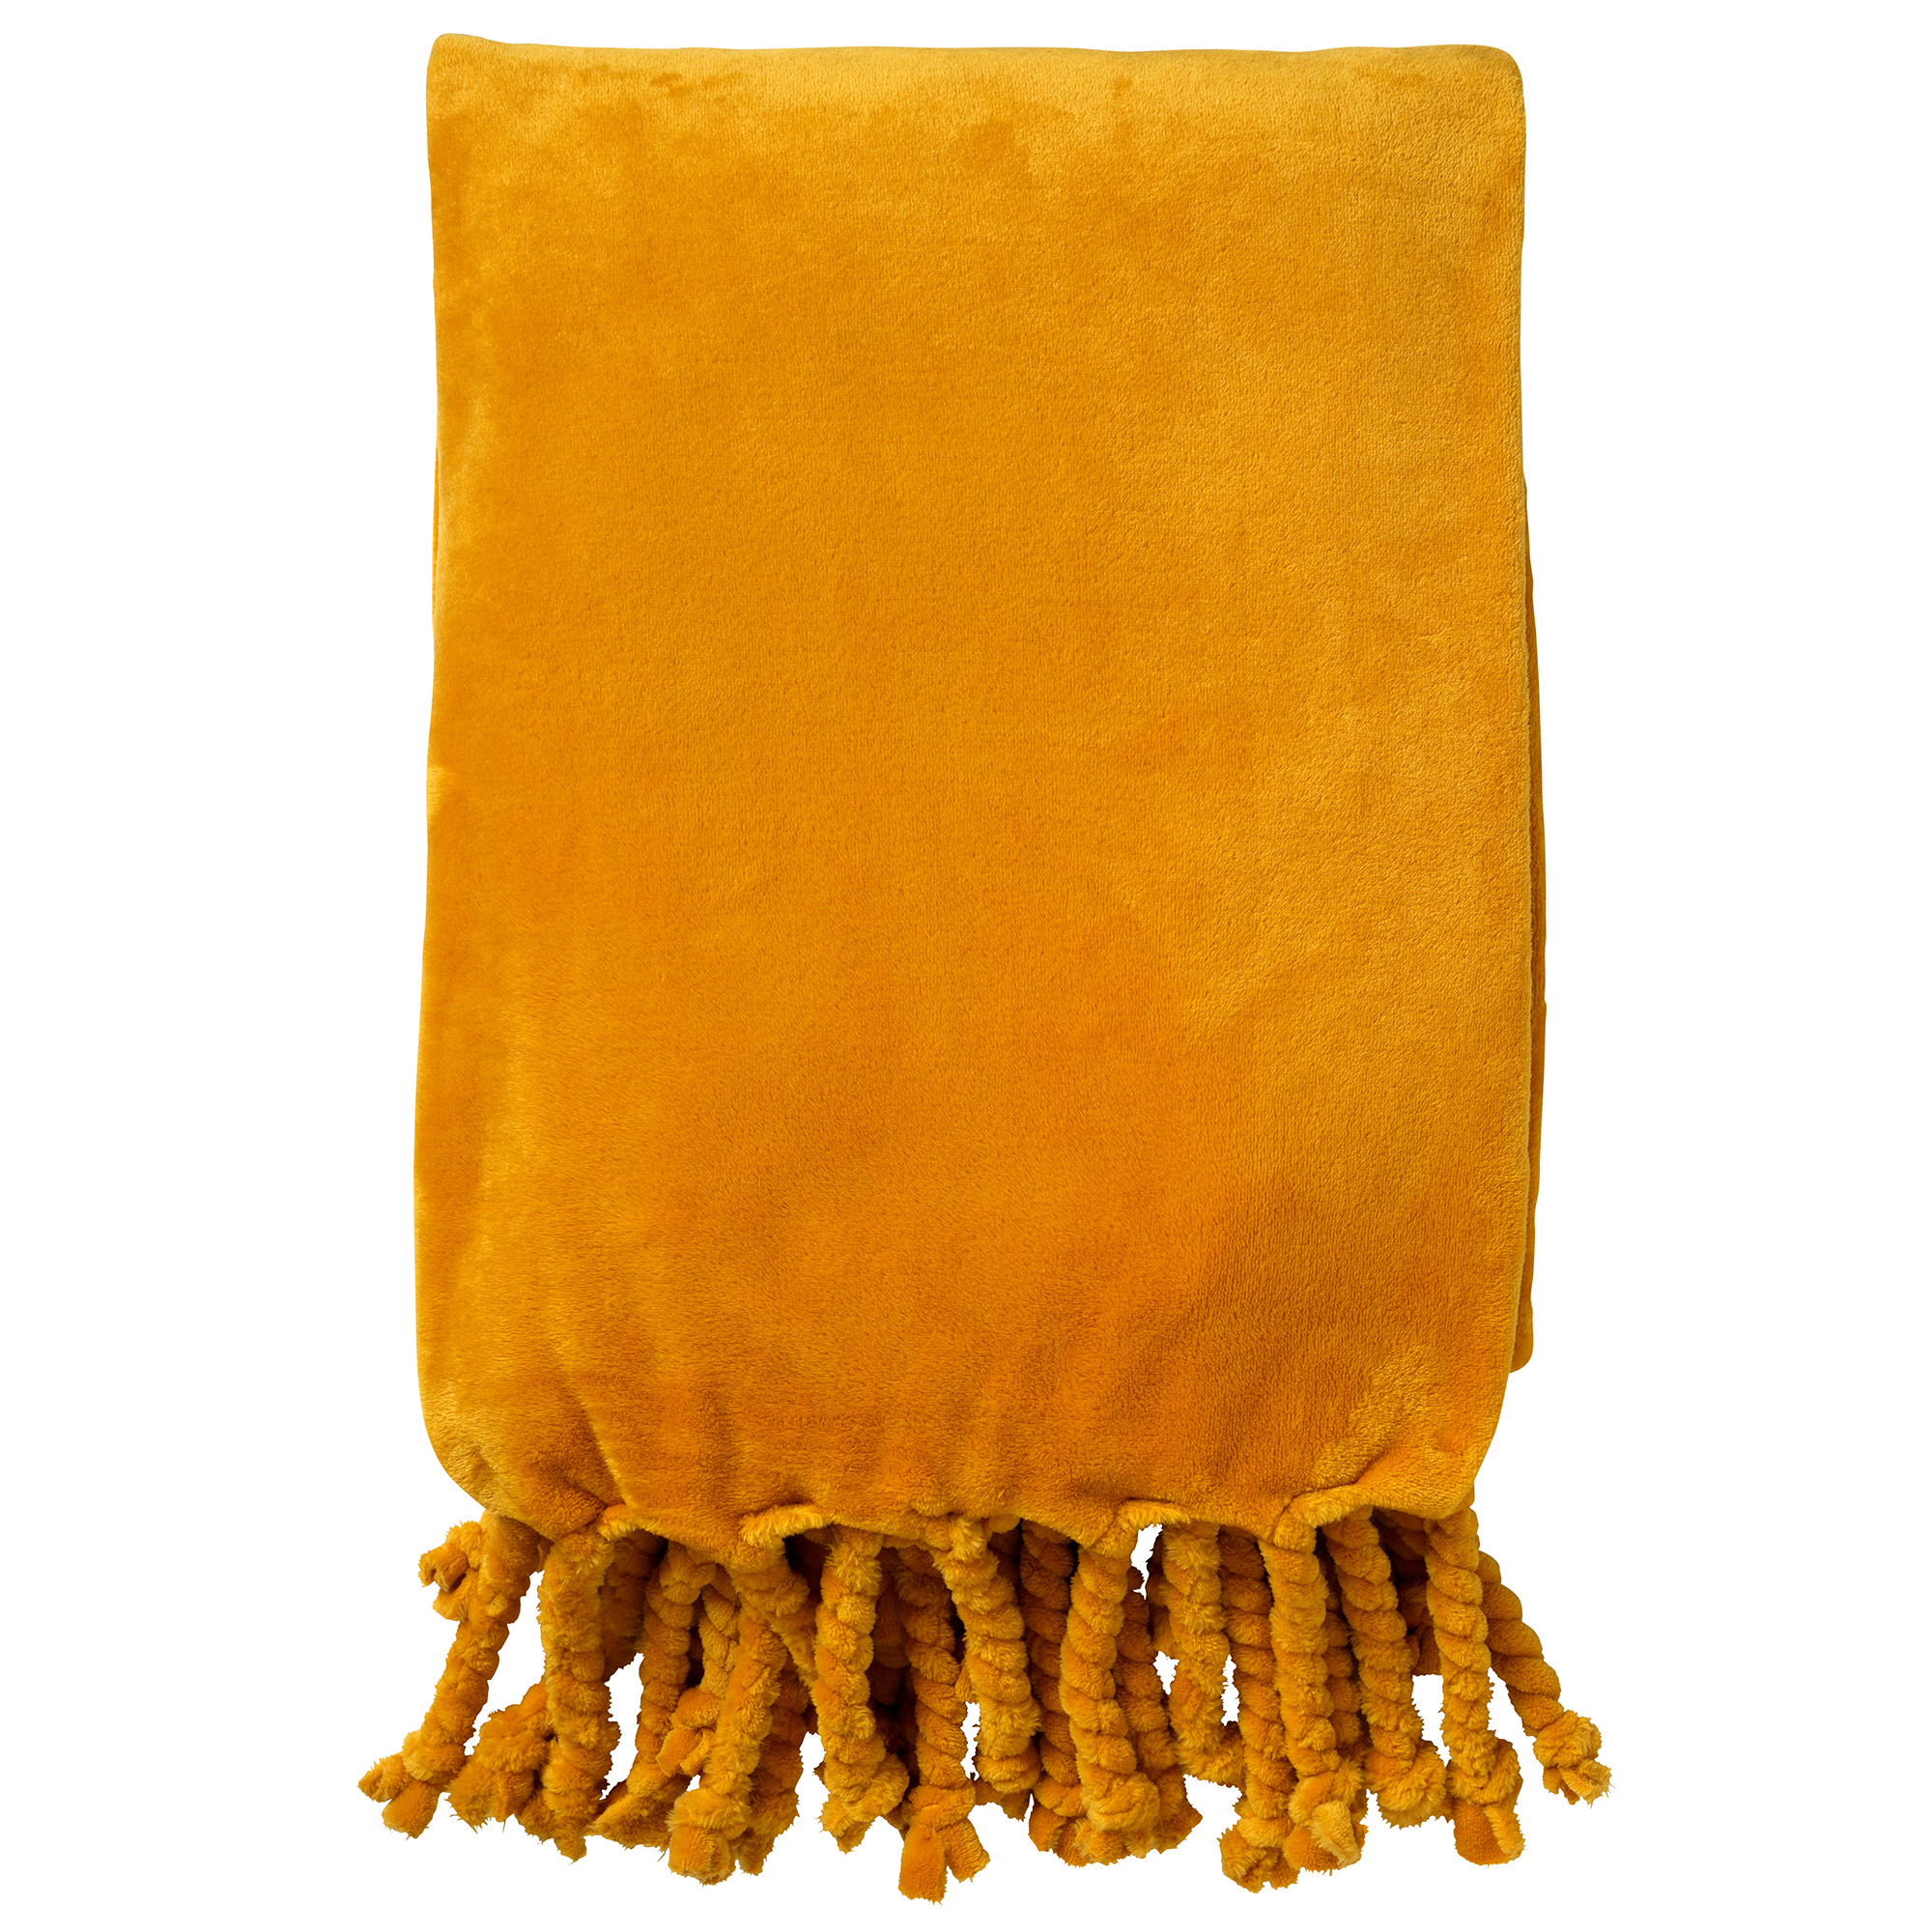 FLORIJN - Plaid 150x200 cm - grote fleece plaid met flosjes - Golden Glow - geel